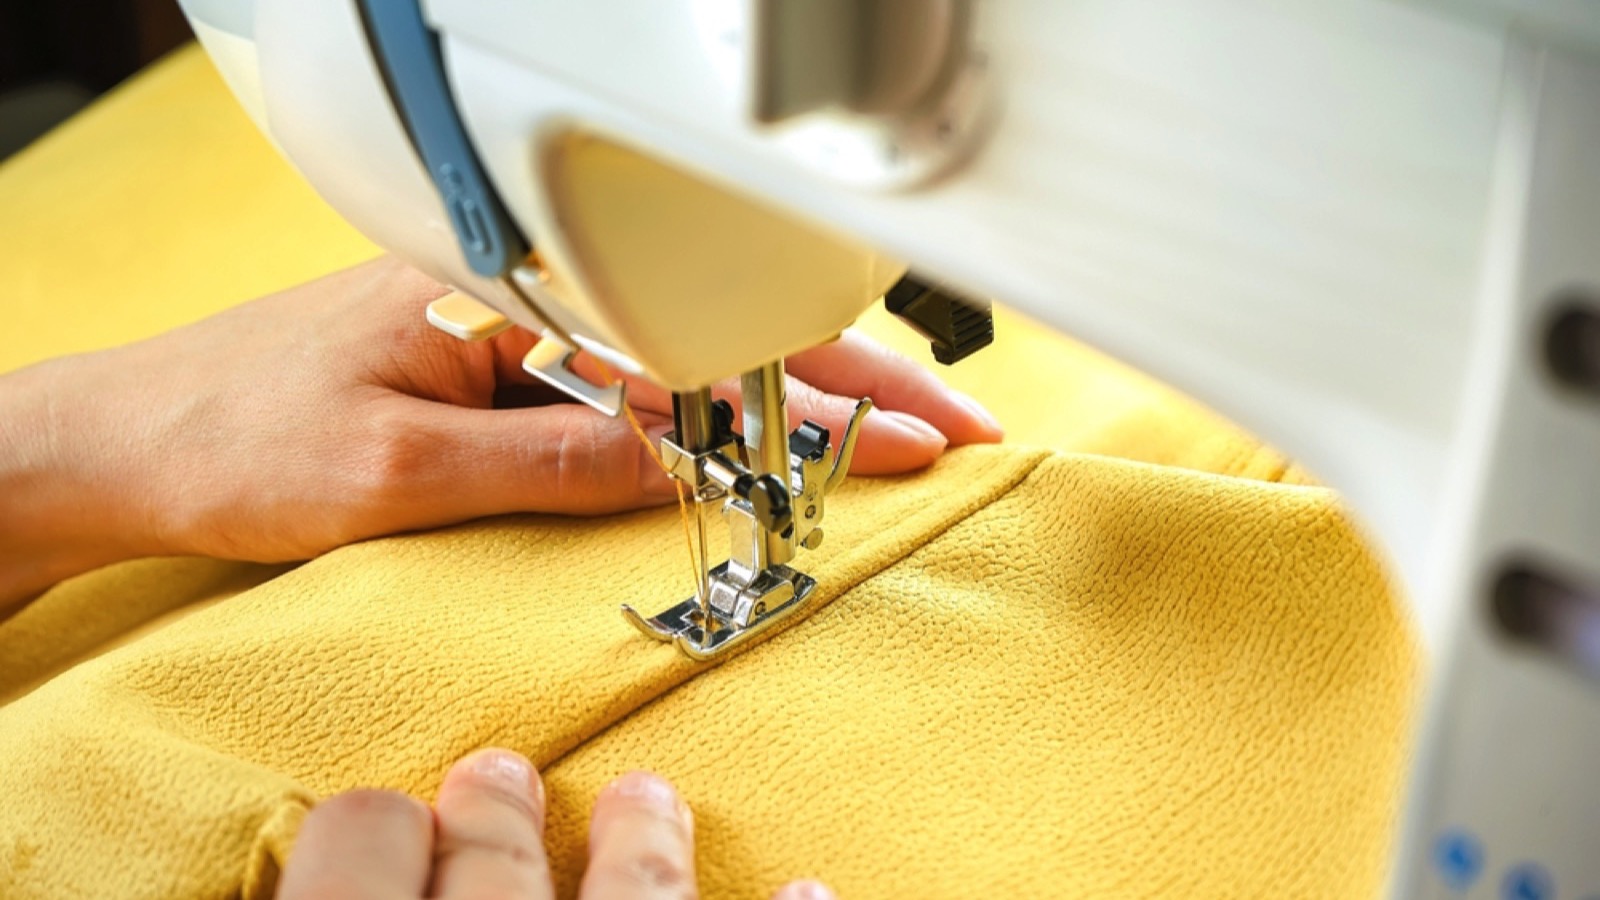 Sewing blanket